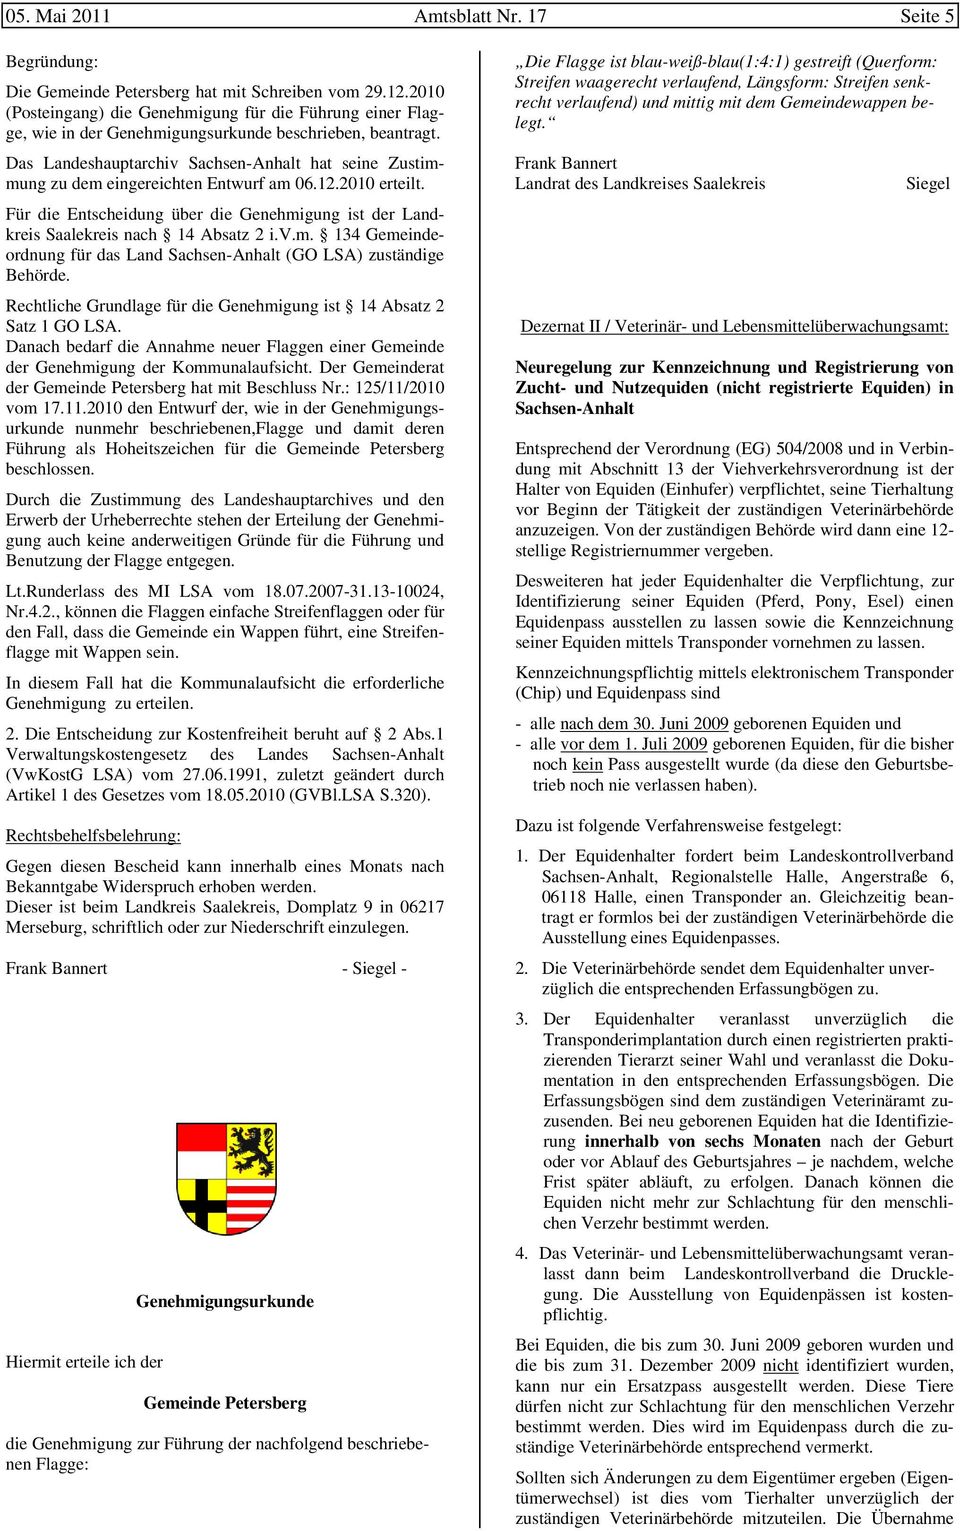 Das Landeshauptarchiv Sachsen-Anhalt hat seine Zustimmung zu dem eingereichten Entwurf am 06.12.2010 erteilt. Für die Entscheidung über die Genehmigung ist der Landkreis Saalekreis nach 14 Absatz 2 i.